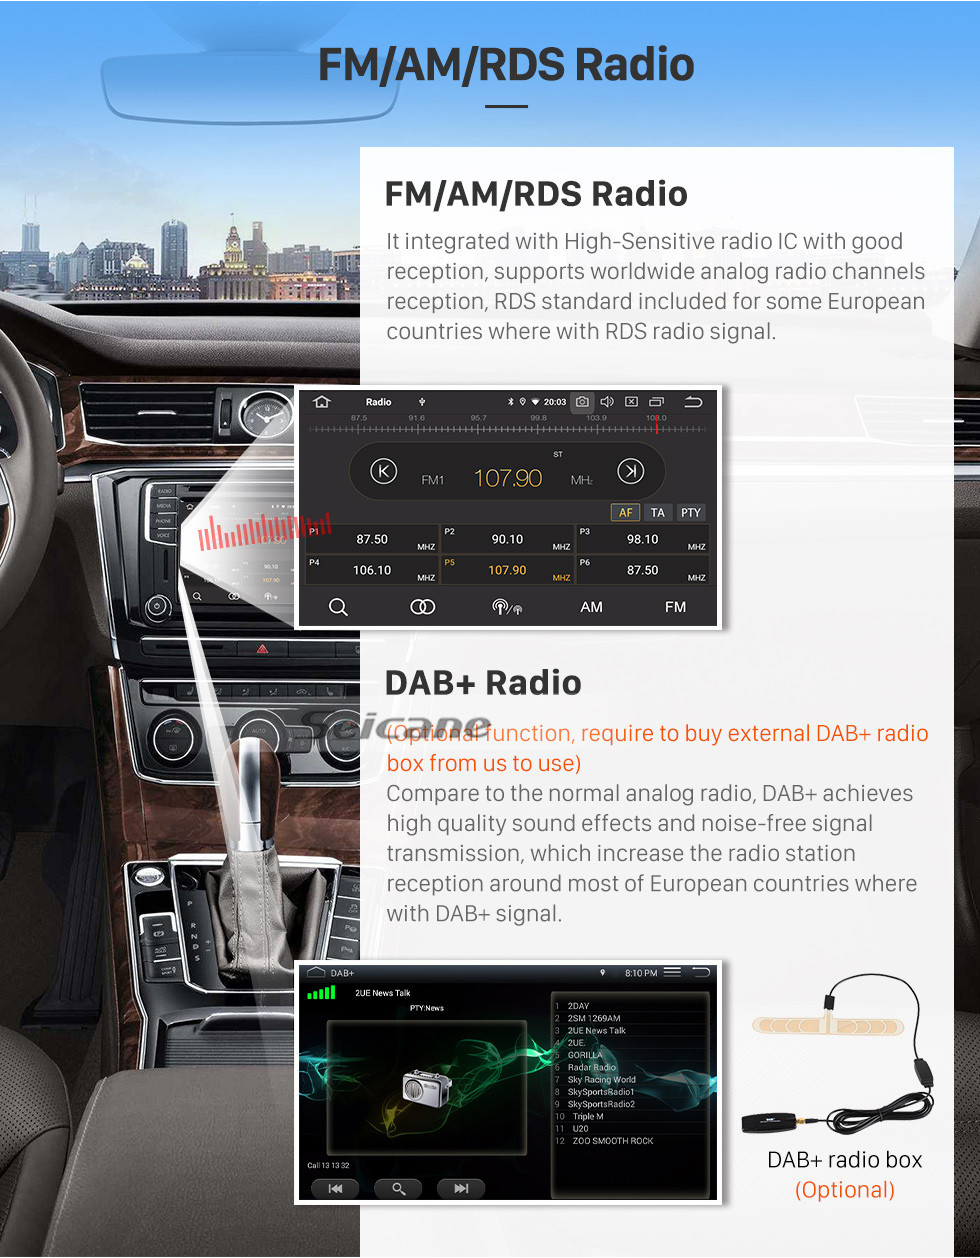 Seicane Android 11.0 Para 2019 Suzuki S-Prseeo Radio 9 polegadas Sistema de Navegação GPS Bluetooth HD Touchscreen Carplay support Câmera traseira